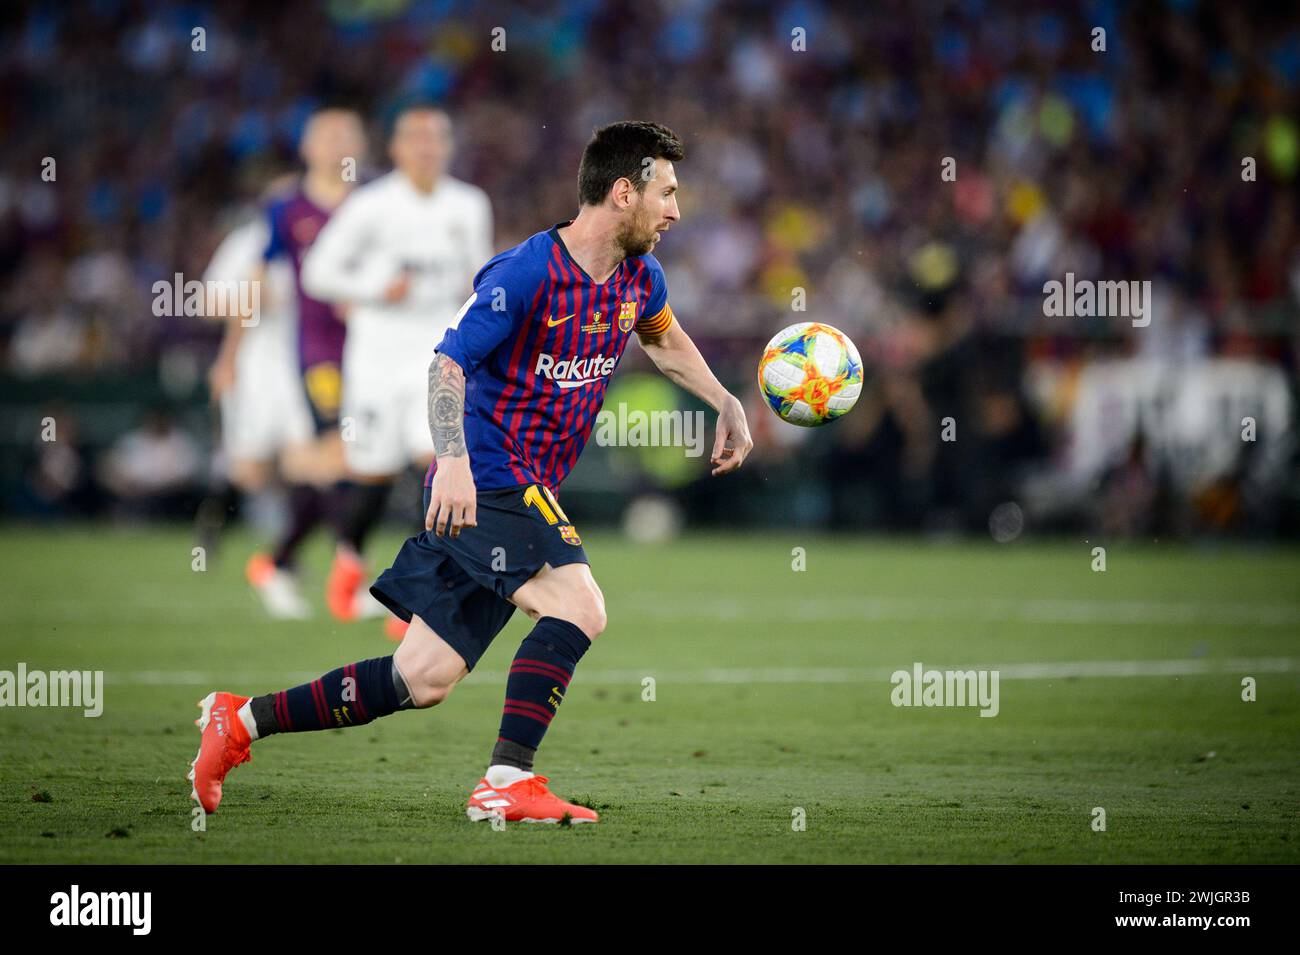 Der Leo Messi des Futbol Club Barcelona kontrolliert den Ball während des Copa del Rey Finales in Sevilla. Stockfoto